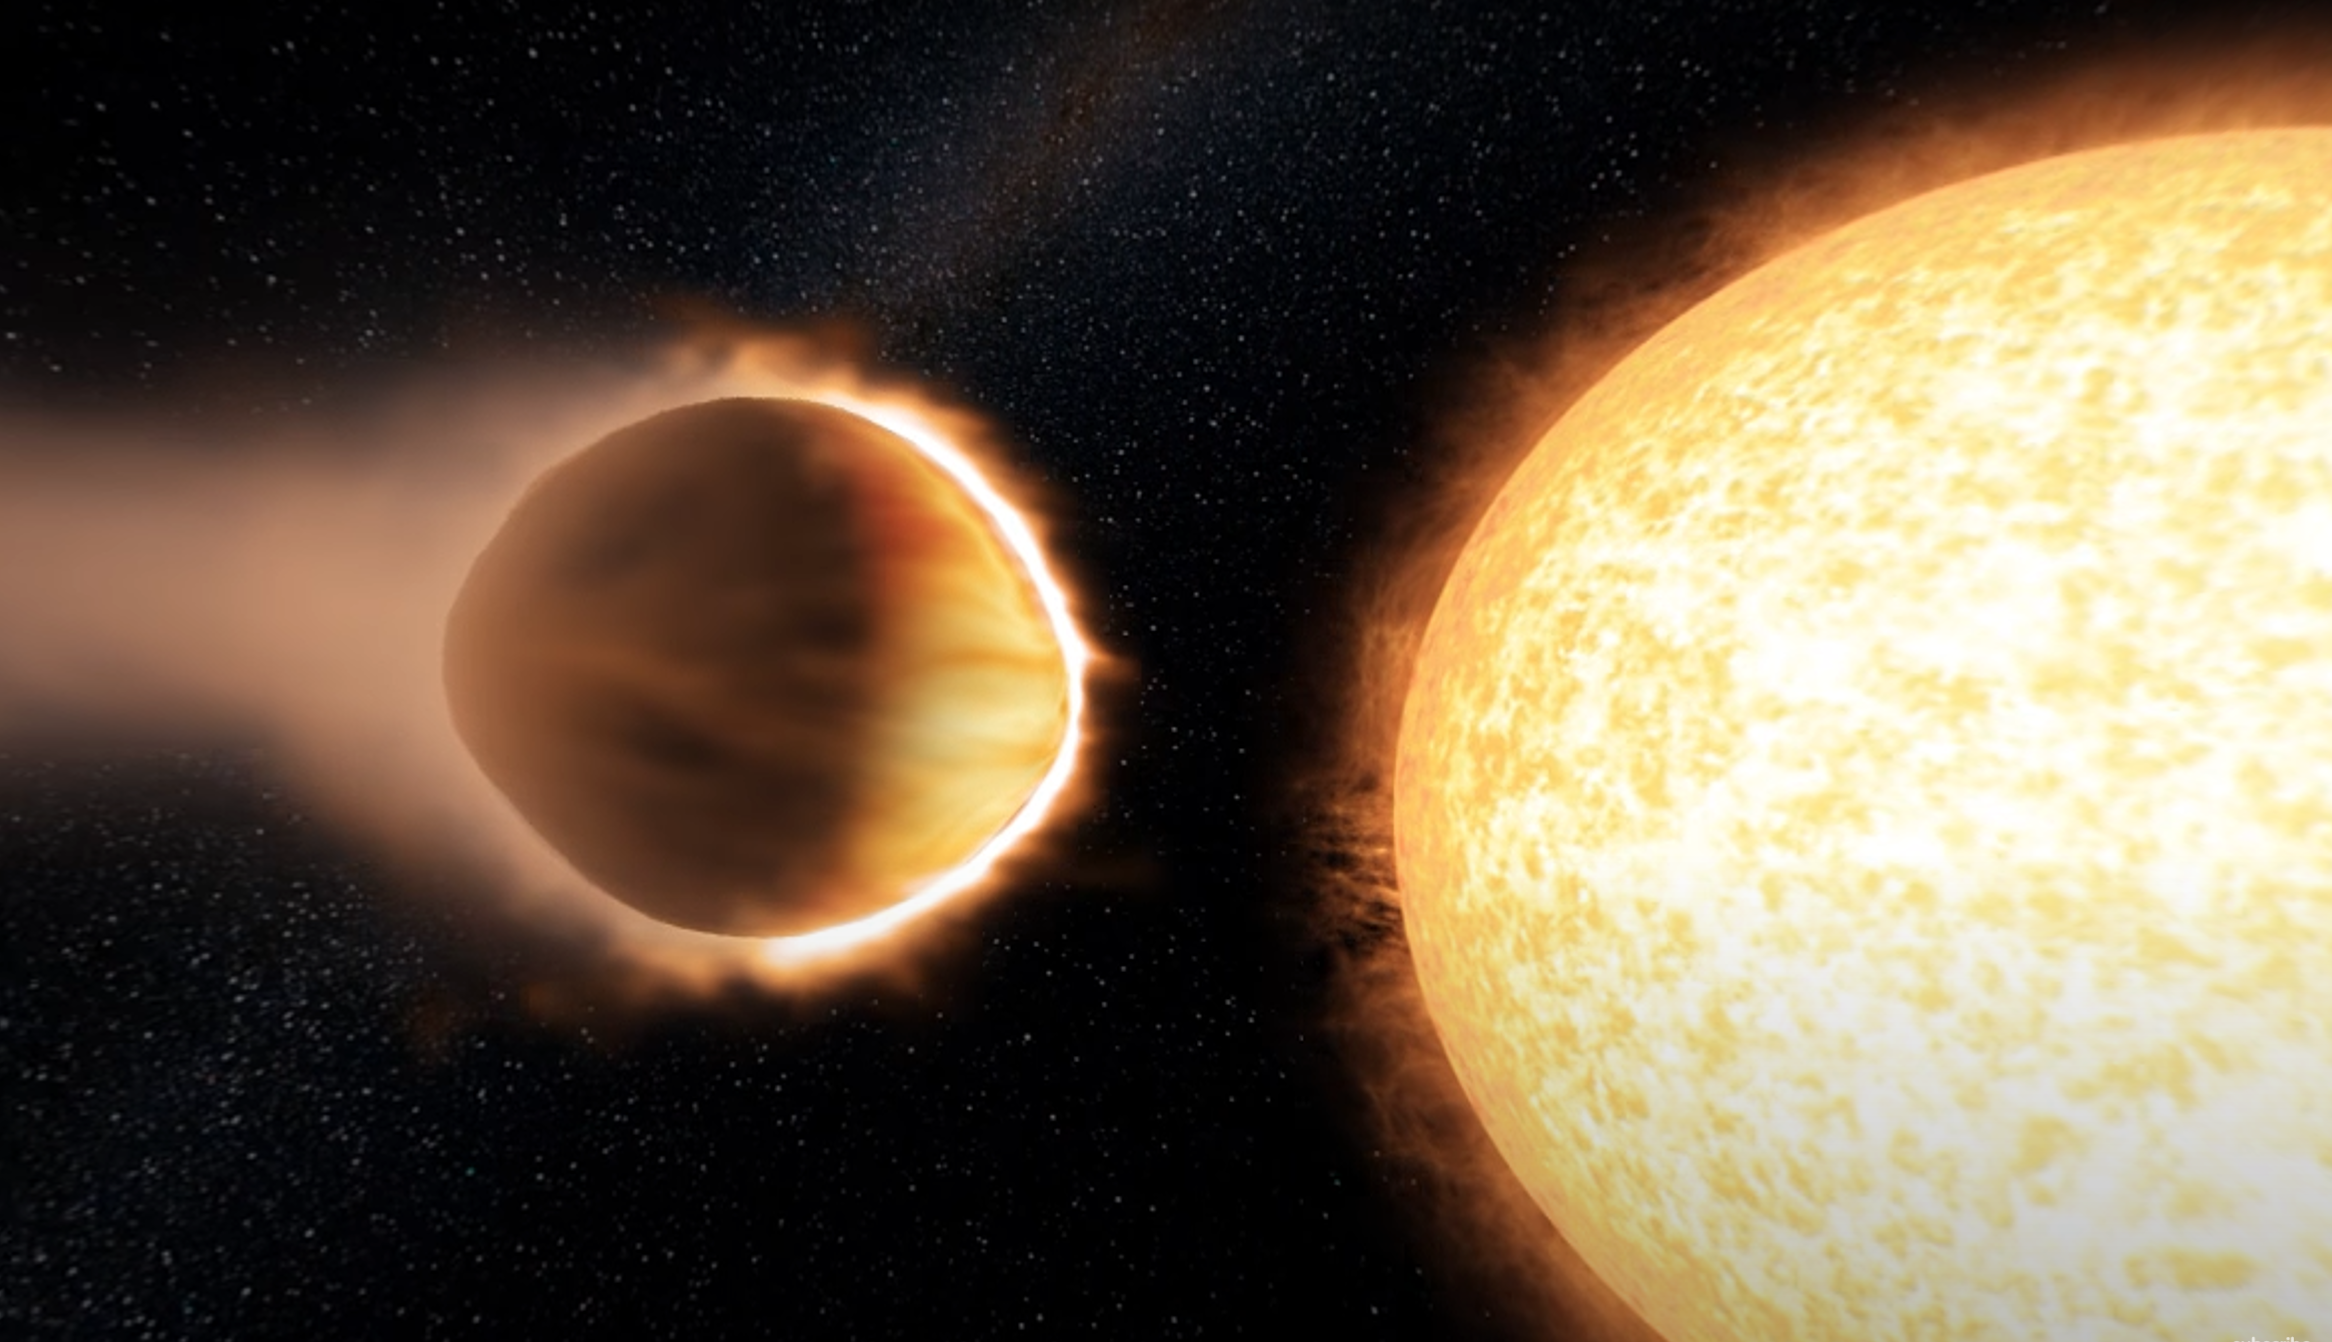 Megvizsgálták a pár éve felfedezett WASP-121b exobolygó légkörét, és kiderült milyen lehet az éghajlat a pokolban